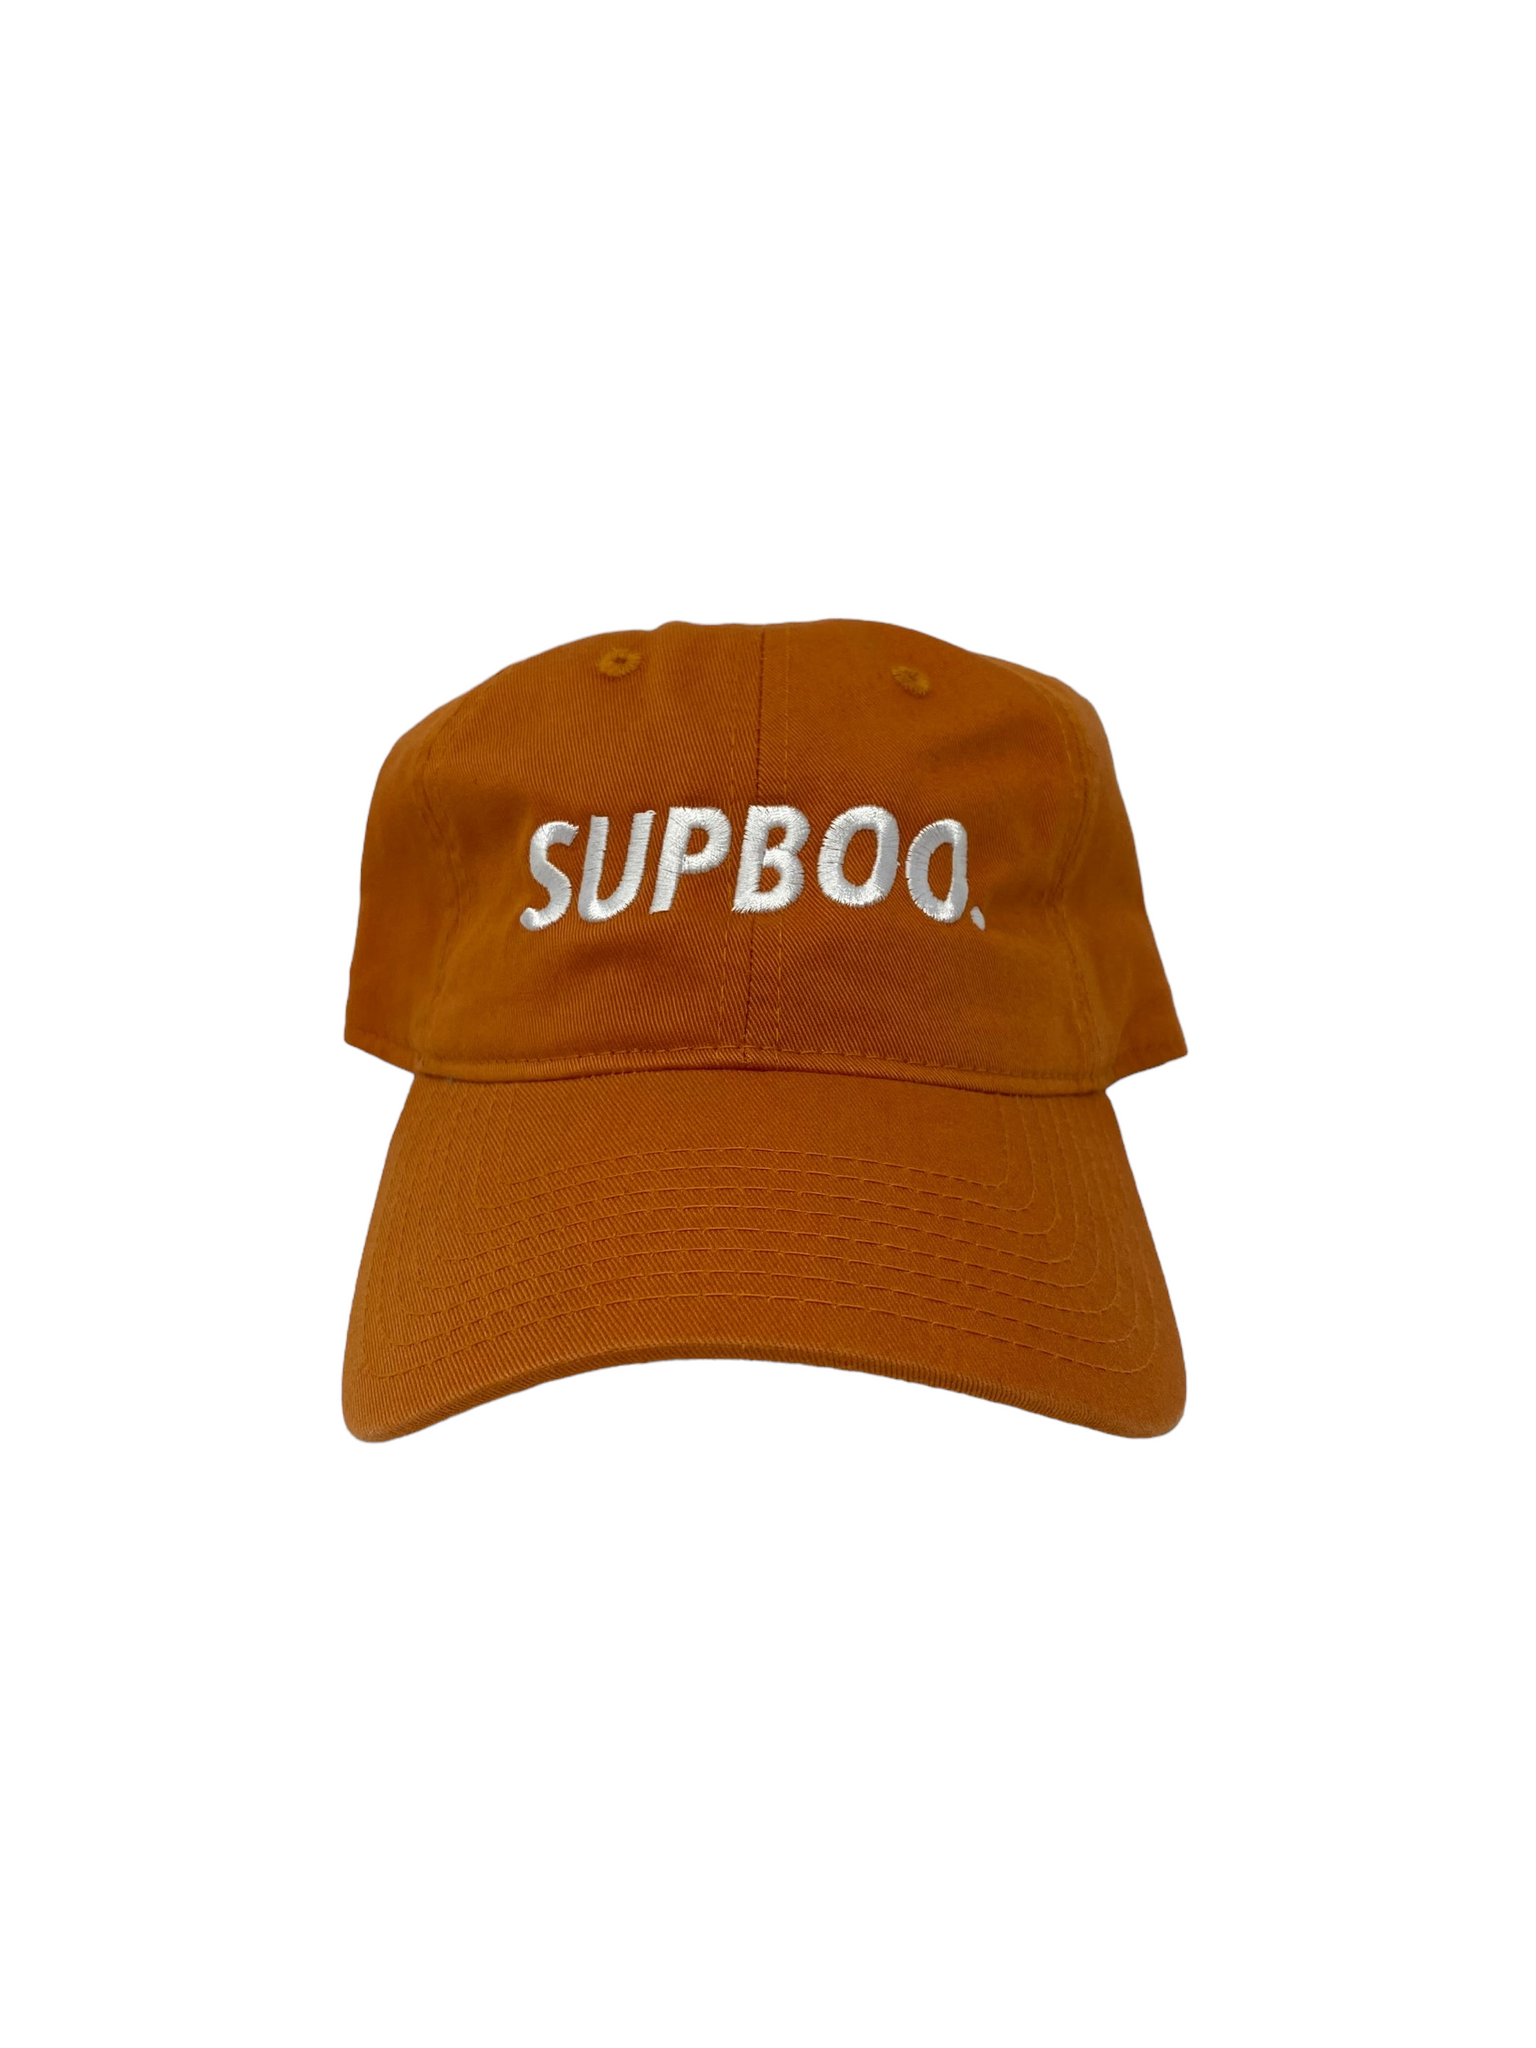 SUPBOO Athletic Dad Hat - Rust Orange